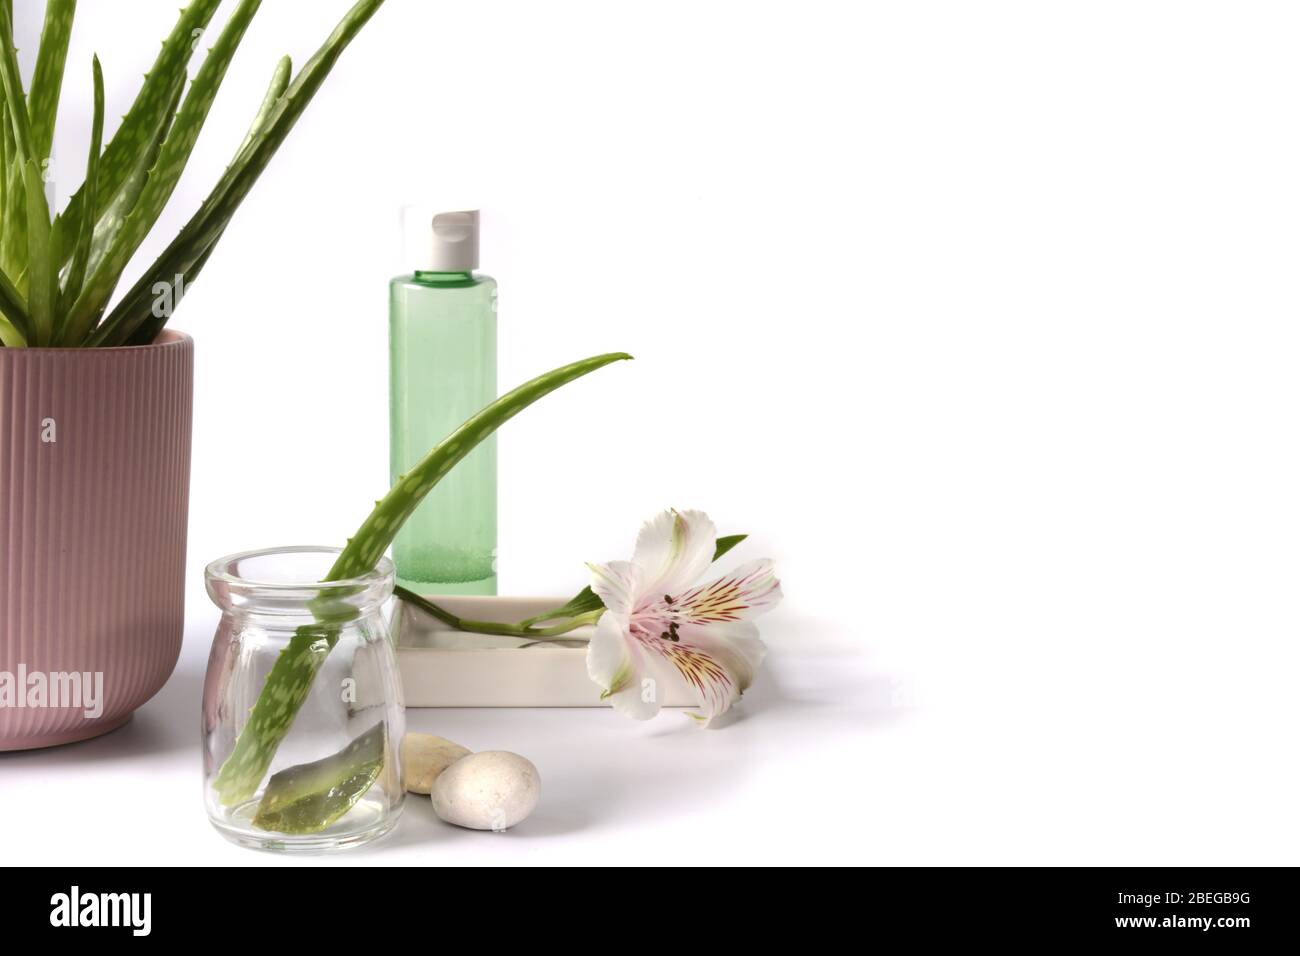 Aloe Vera planta en maceta, tallo fresco sobre fondo blanco. Concepto de piel, belleza y terapia de spa. Banner, fondo de planta Foto de stock